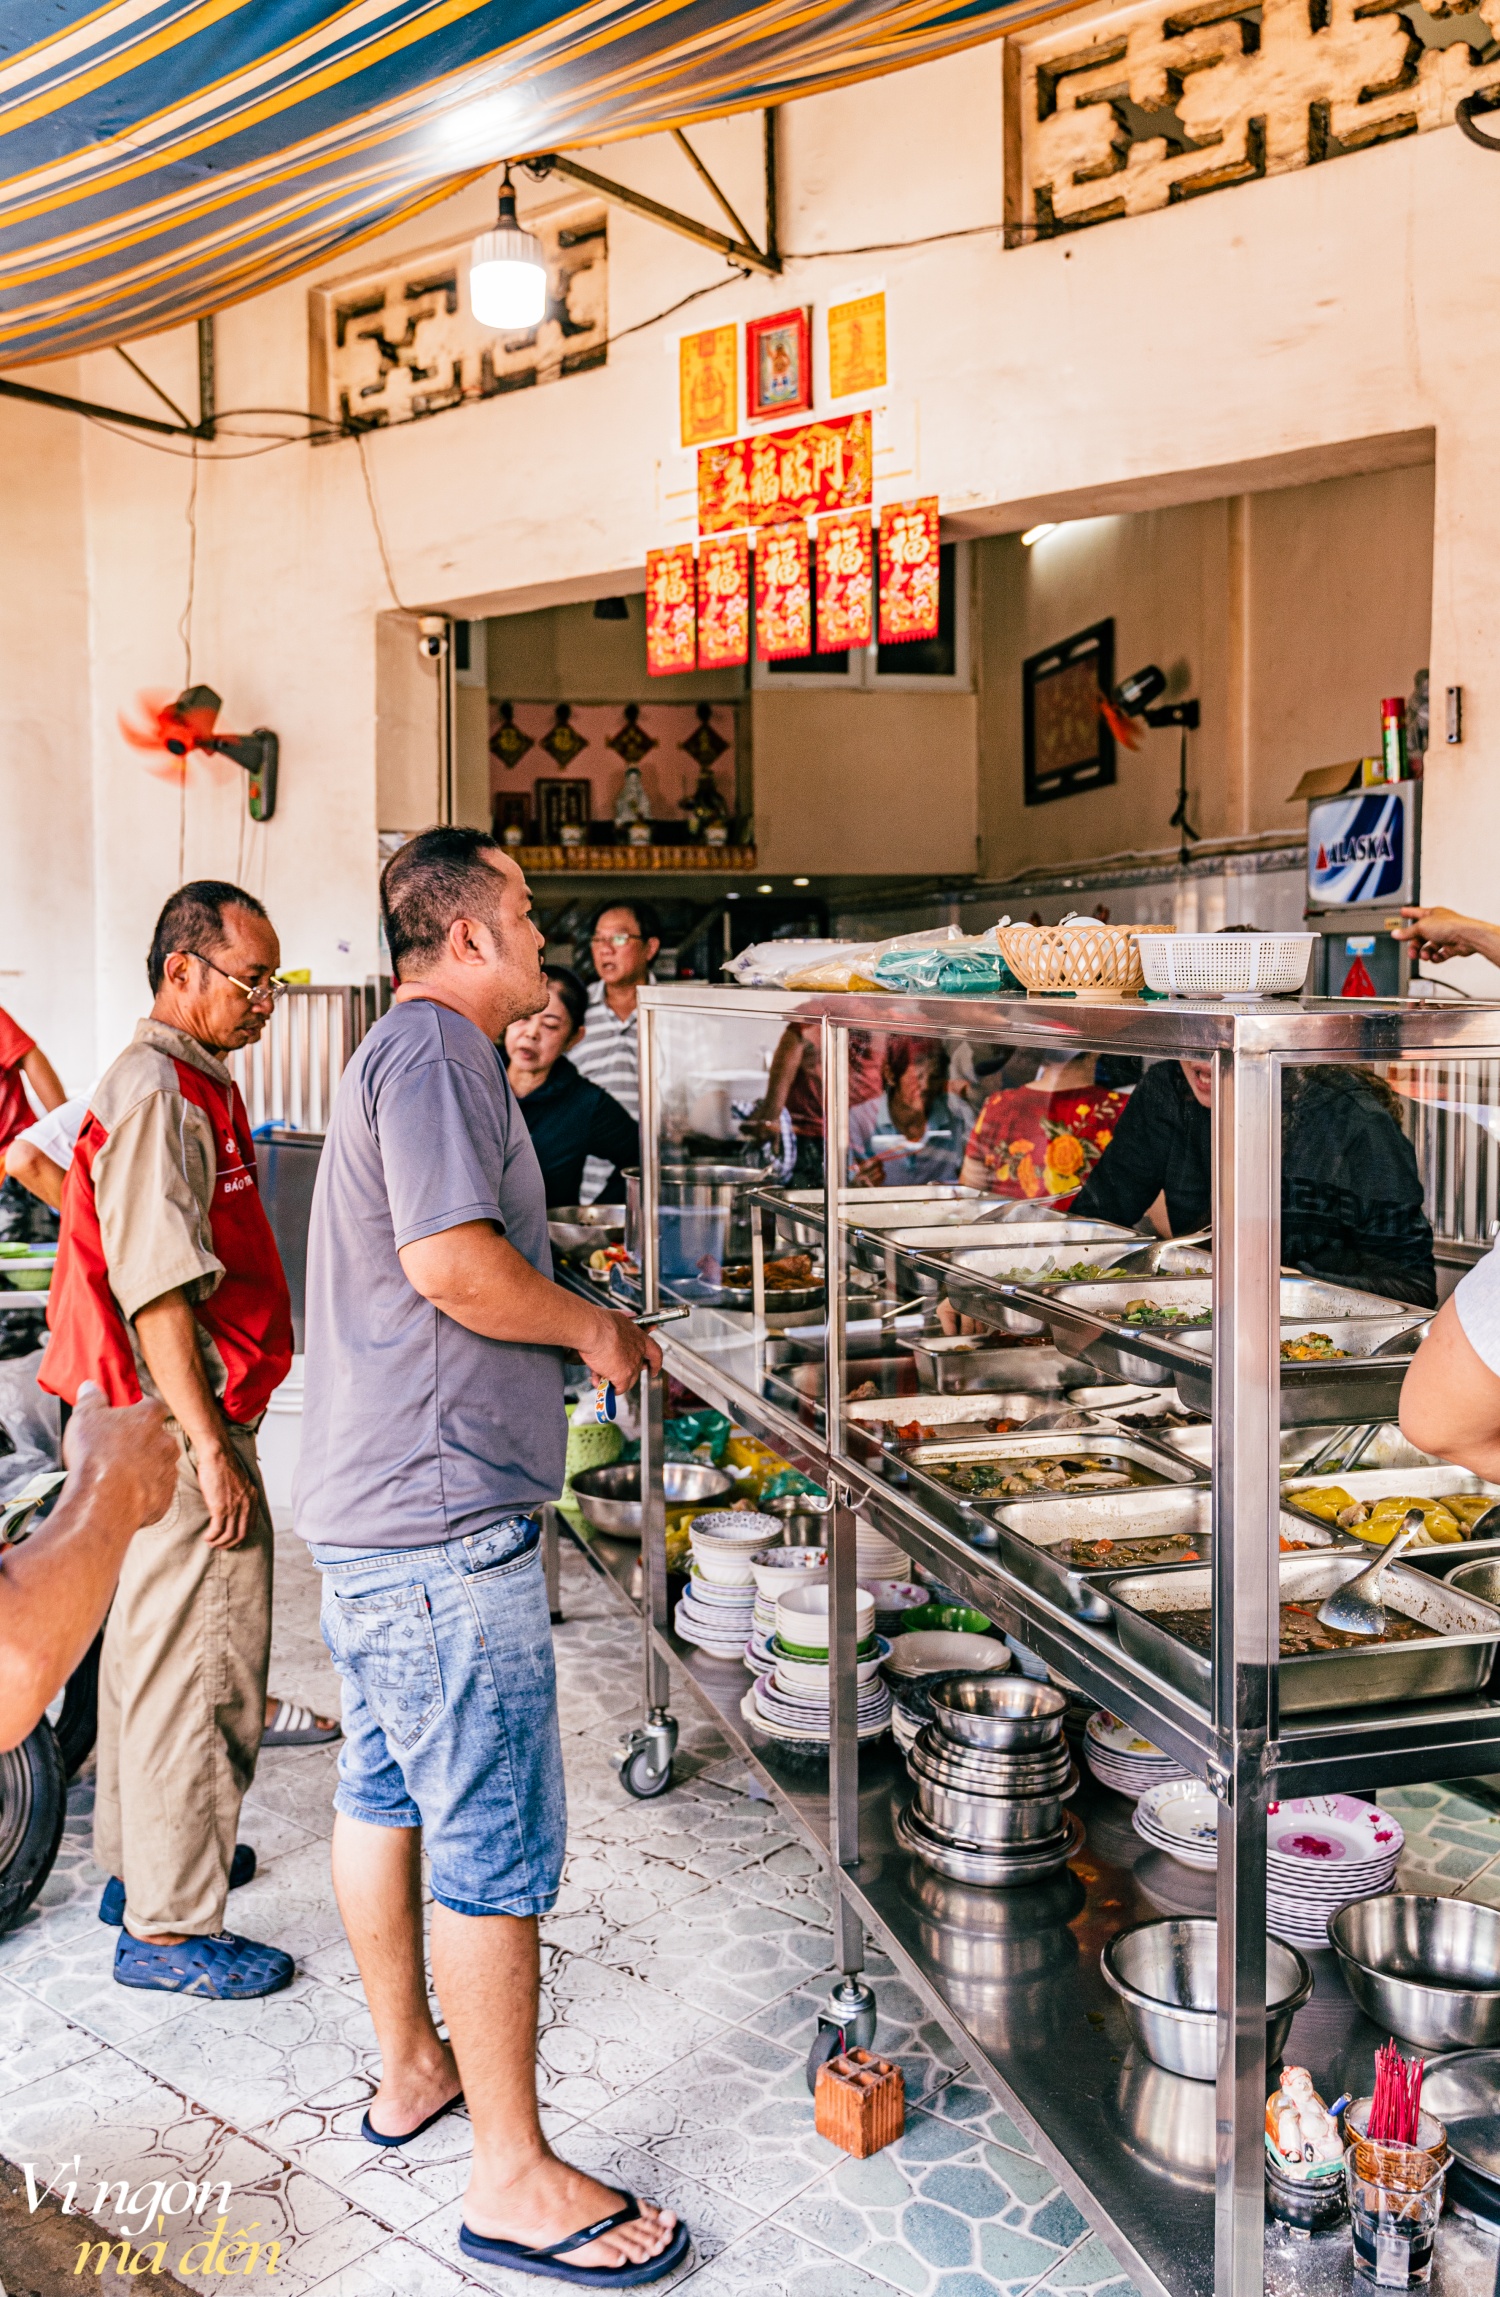 Đi ăn cơm bình dân kiểu người Hoa: Cửa tiệm bán 3 đời mỗi ngày nấu hơn 30 món cầu kỳ, đông khách đến nỗi không dám mở trên ứng dụng giao đồ ăn- Ảnh 19.